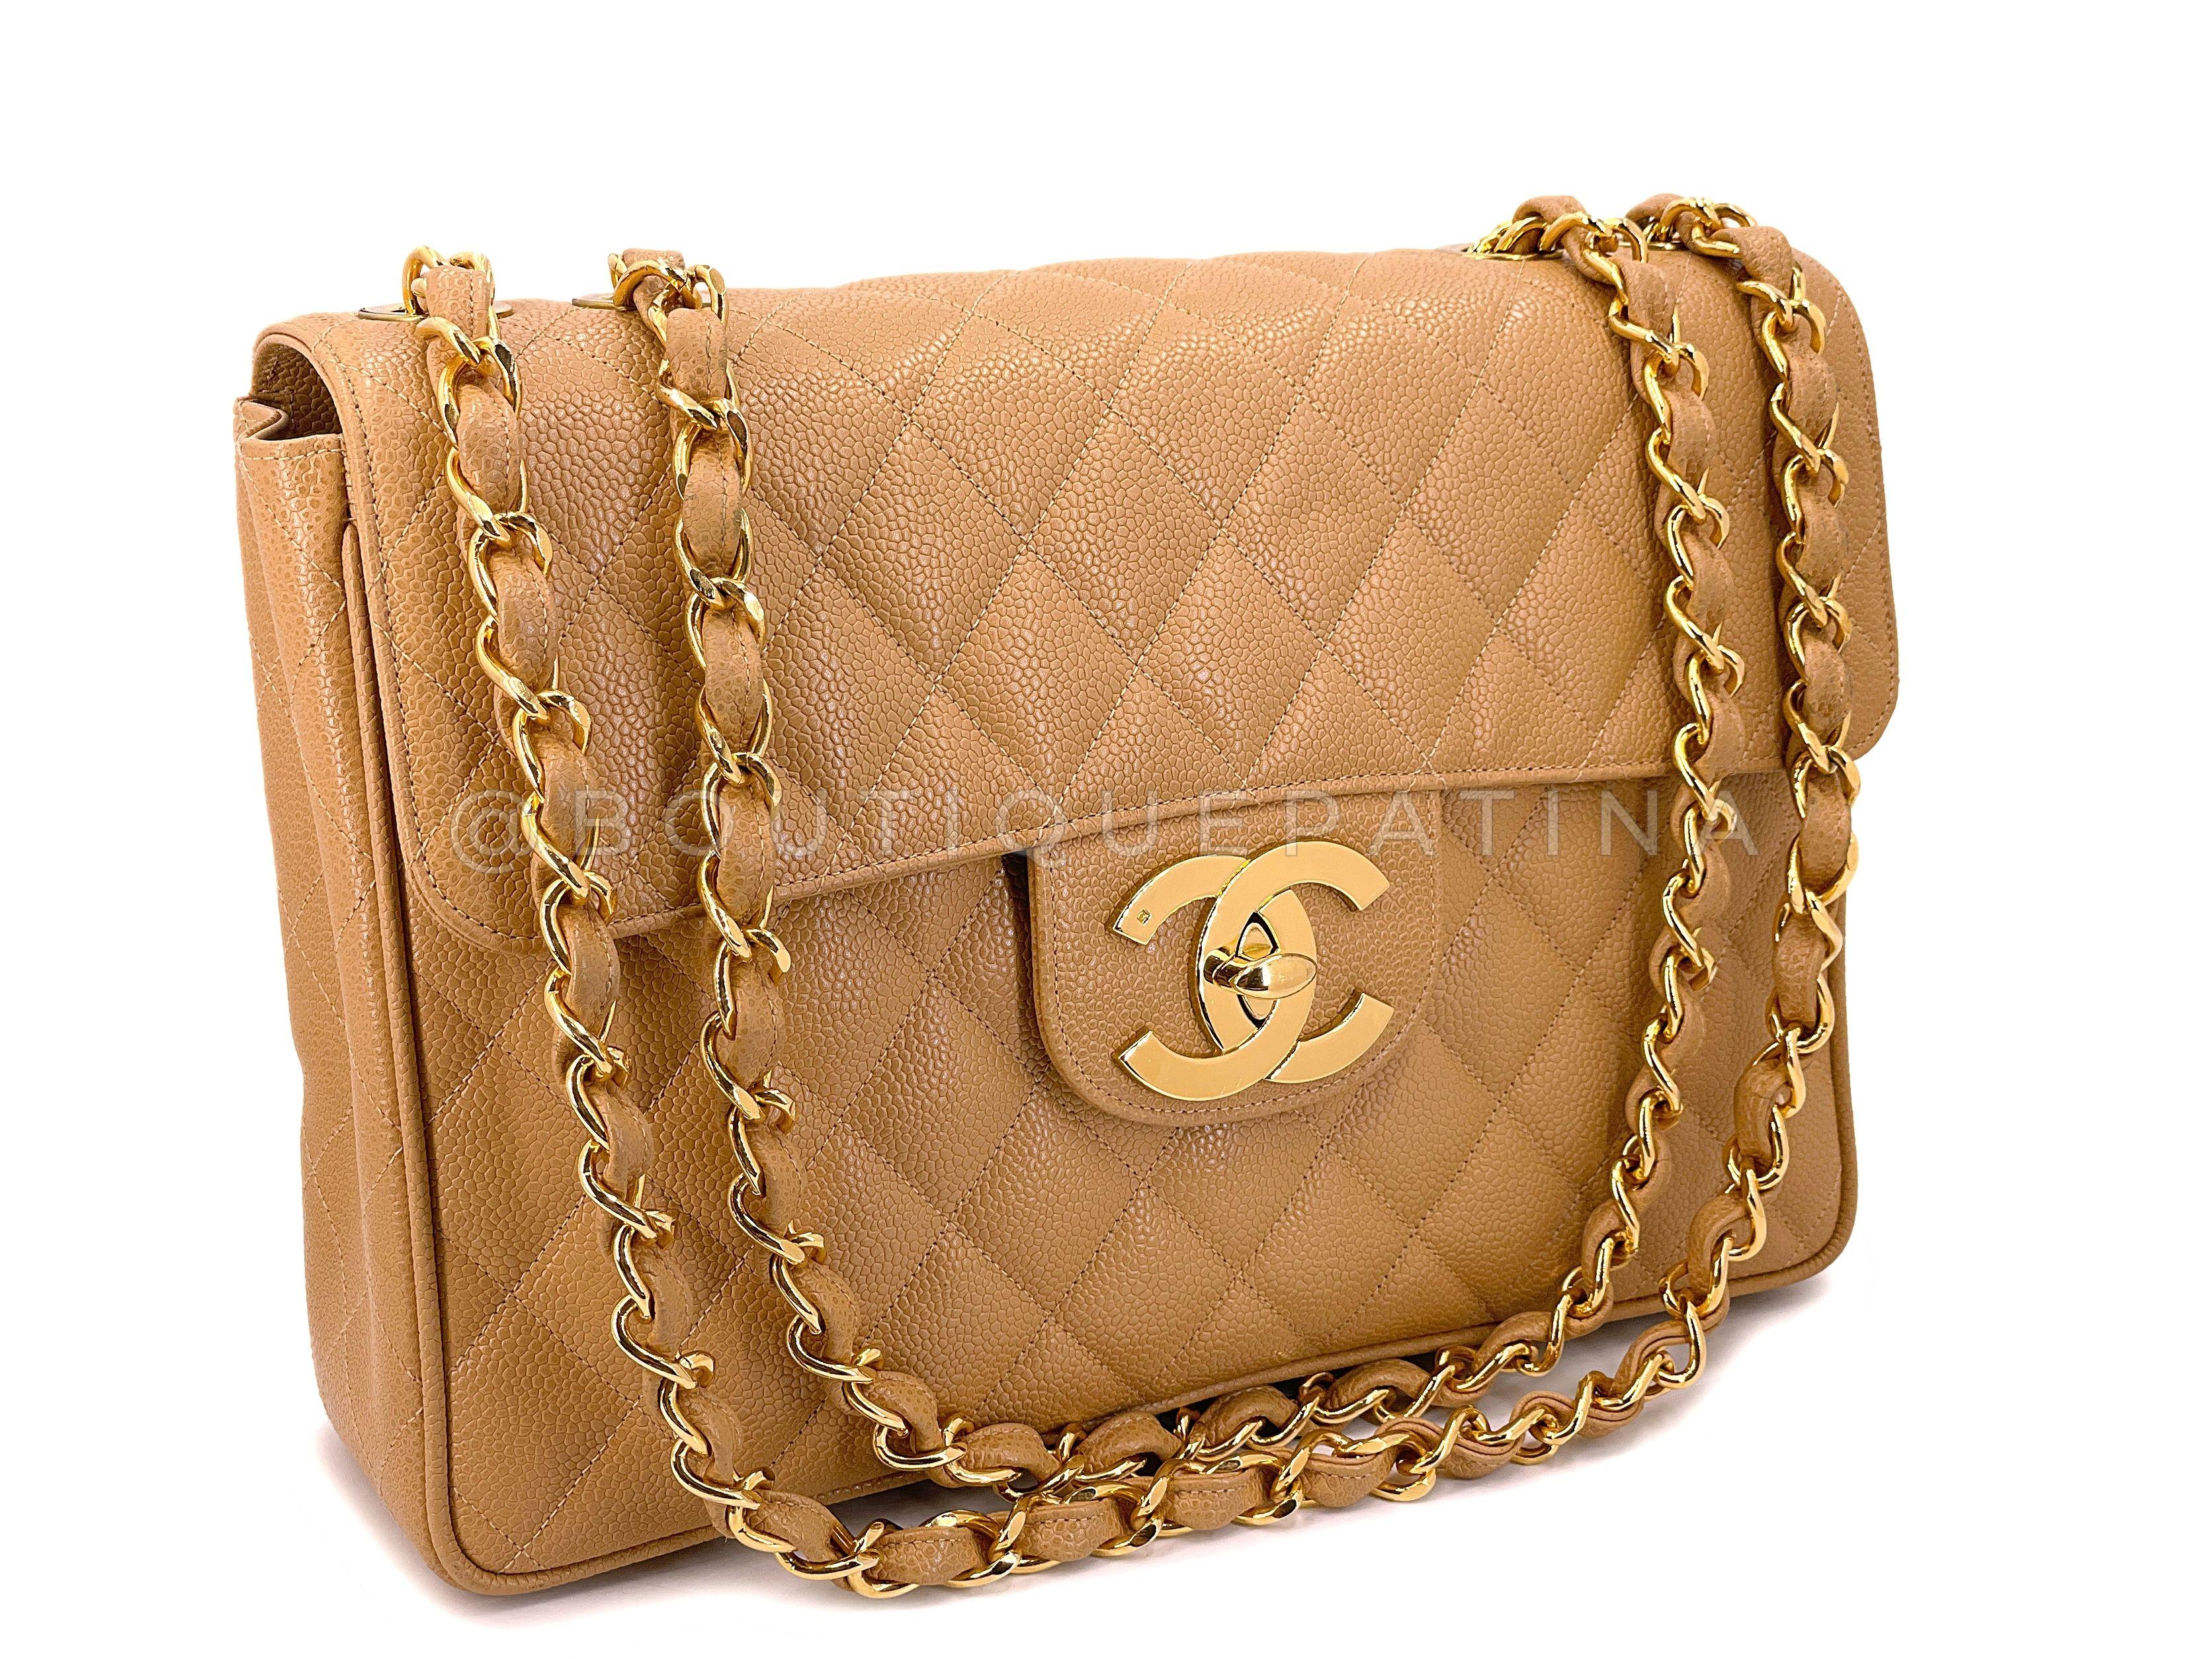 Chanel 2000 Vintage Caramel Beige Kelly Handle Bag 24k GHW